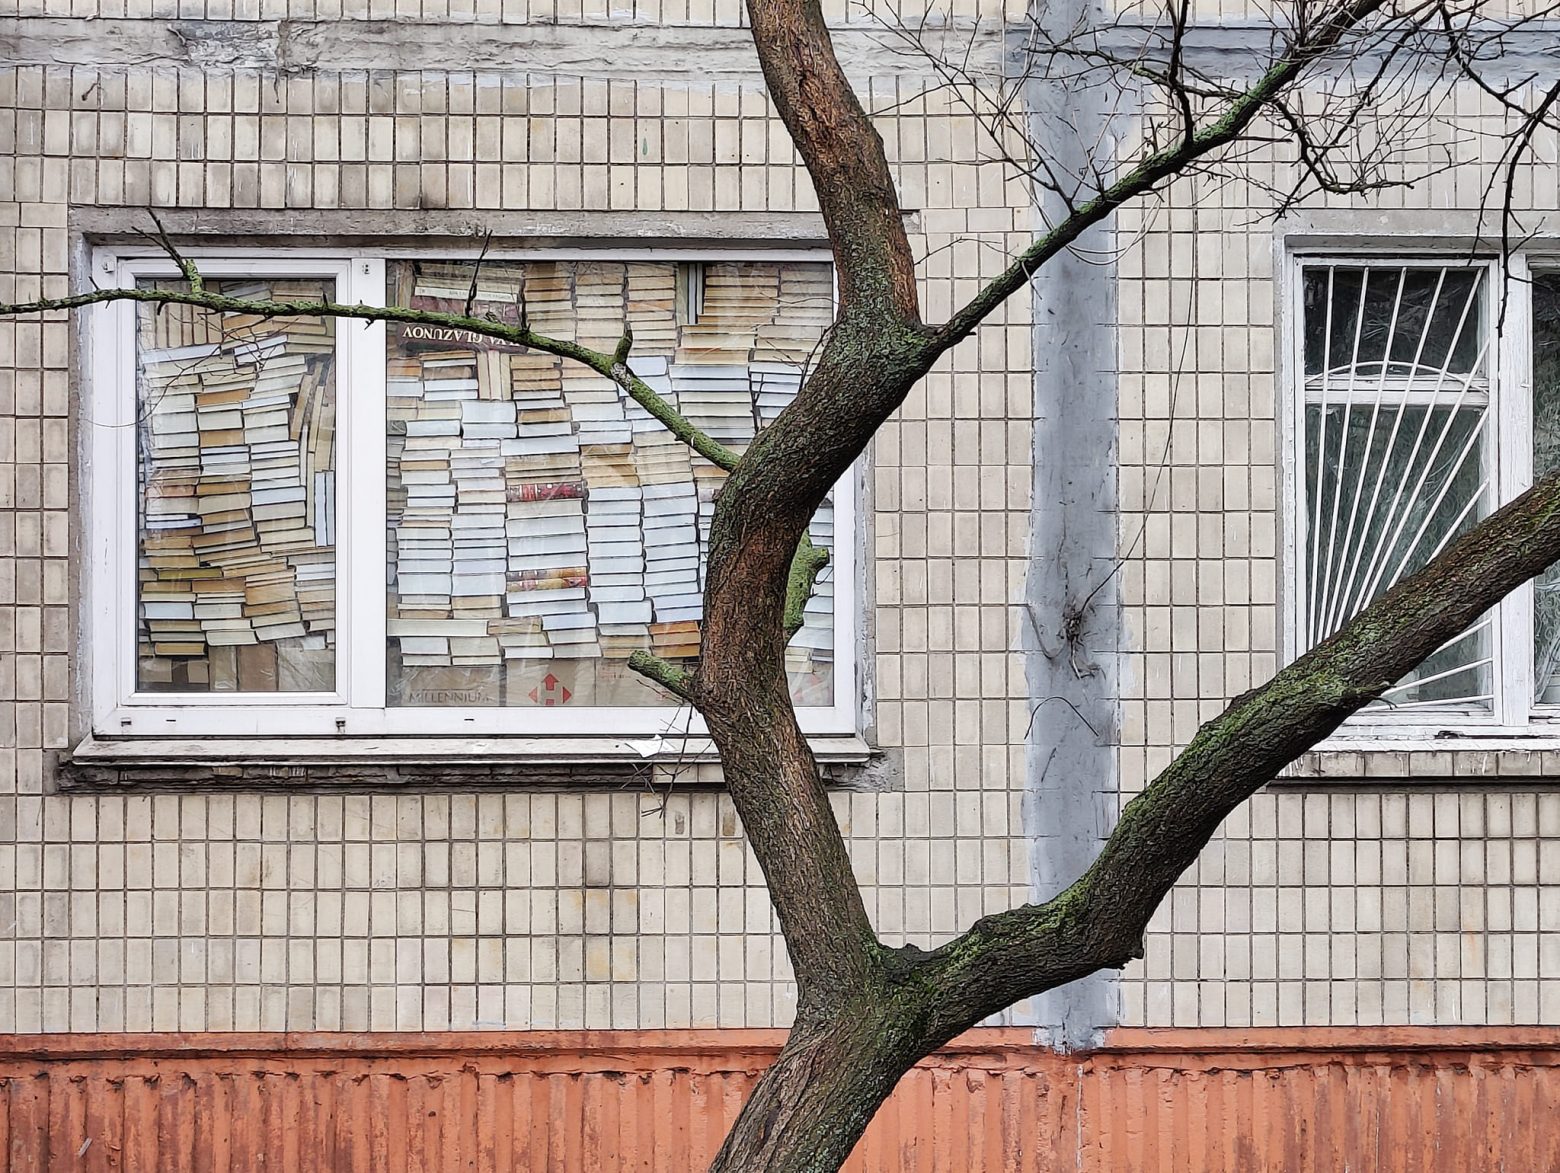 Πόλεμος στην Ουκρανία: Όταν τα βιβλία σε προστατεύουν… σώματι και πνεύματι  - Οικονομικός Ταχυδρόμος - ot.gr